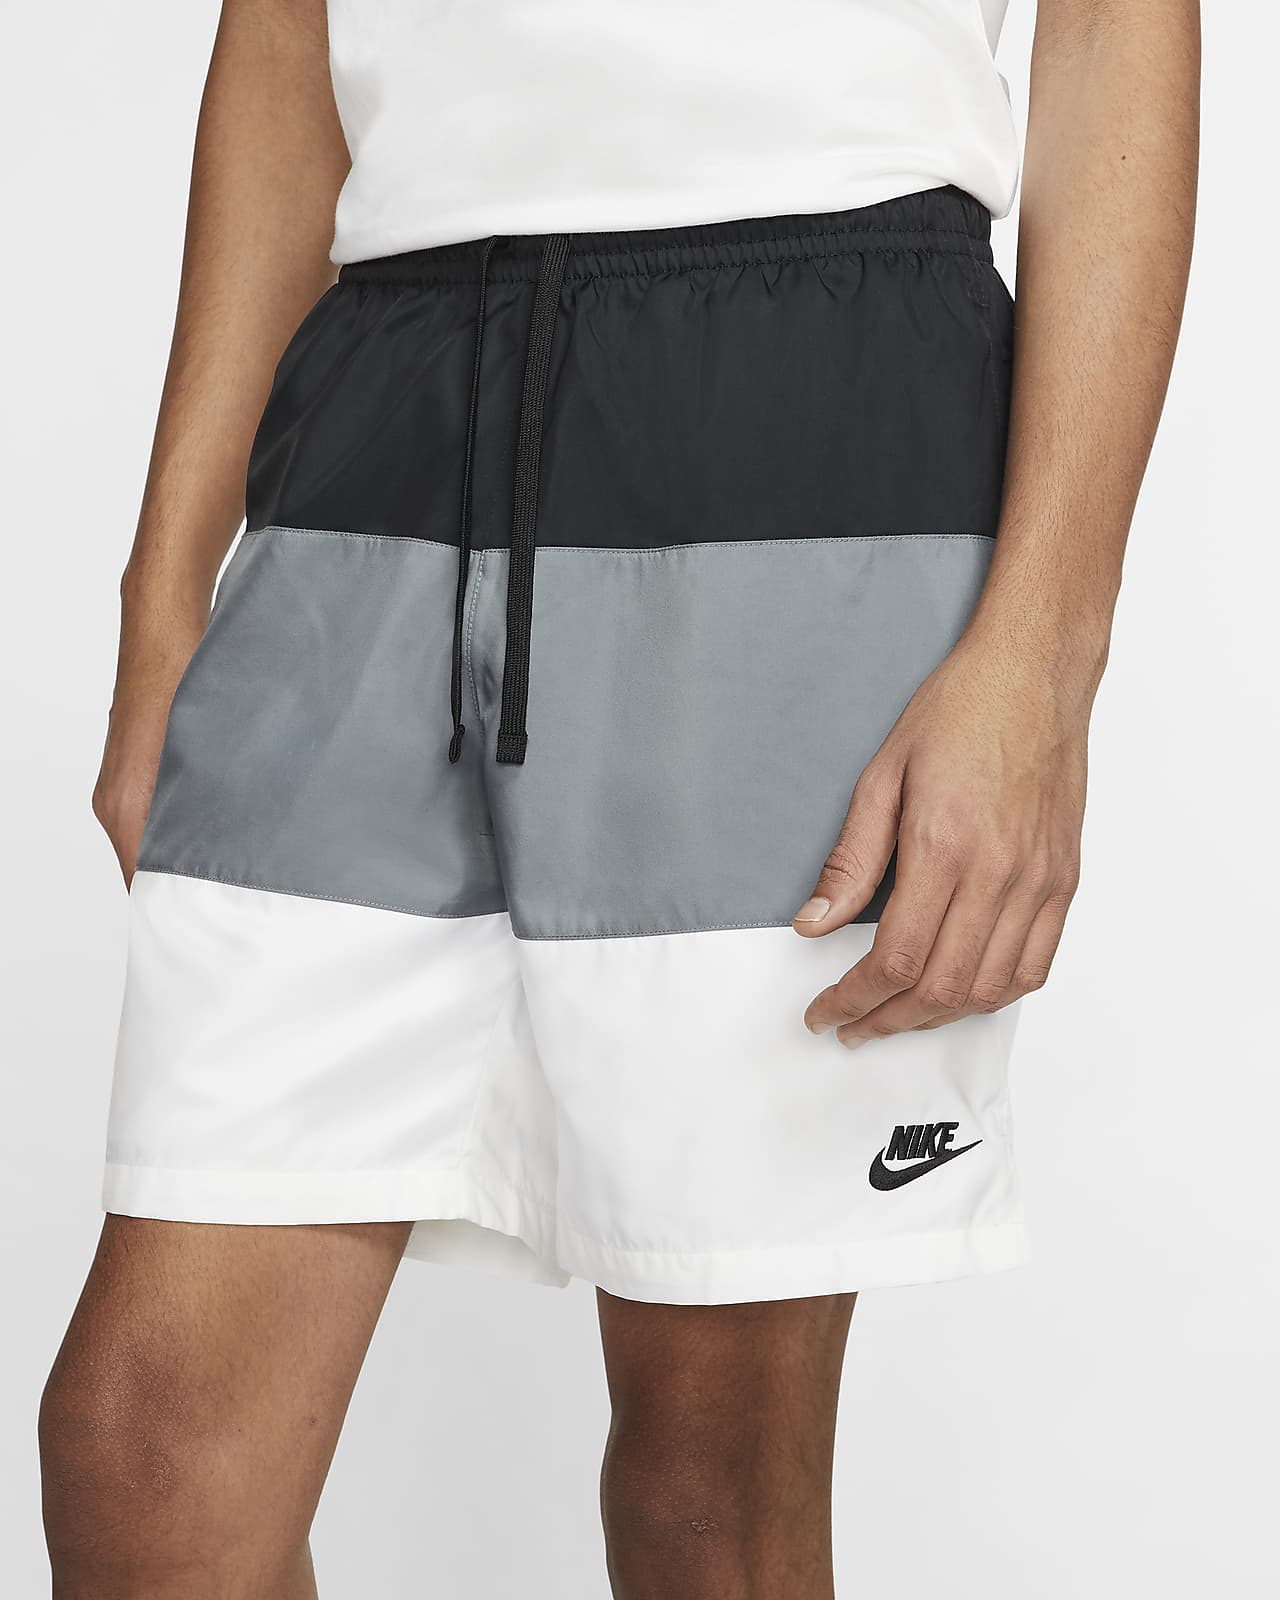 Nike Sportswear City Edition Men's 